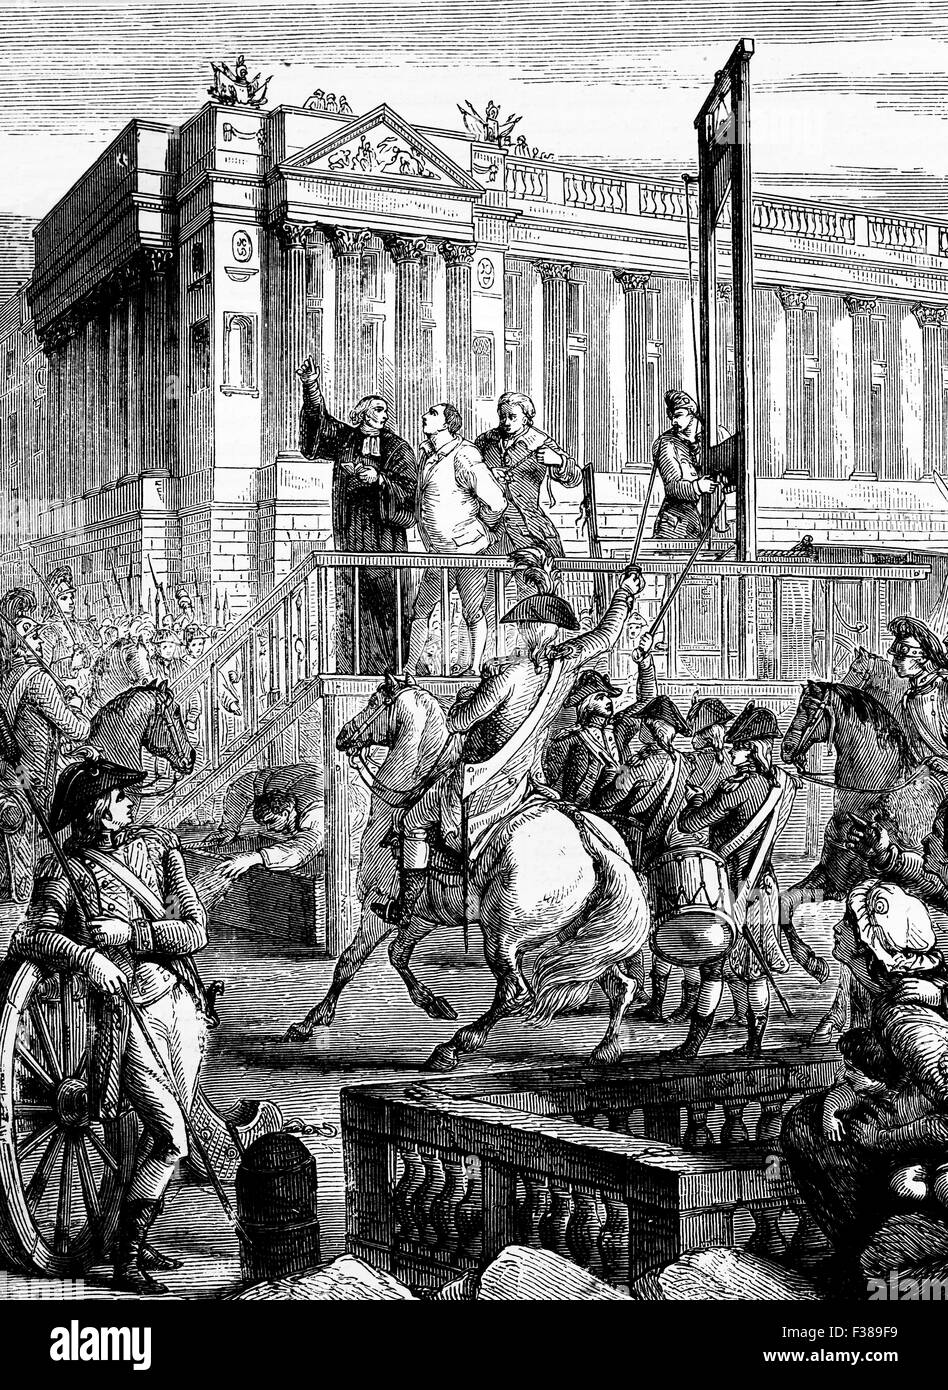 Le public l'exécution de Louis XVI par guillotine le 21 janvier 1793 à la place de la Révolution (Place de la Révolution', anciennement place Louis XV, rebaptisée Place de la Concorde en 1795) à Paris, France Banque D'Images